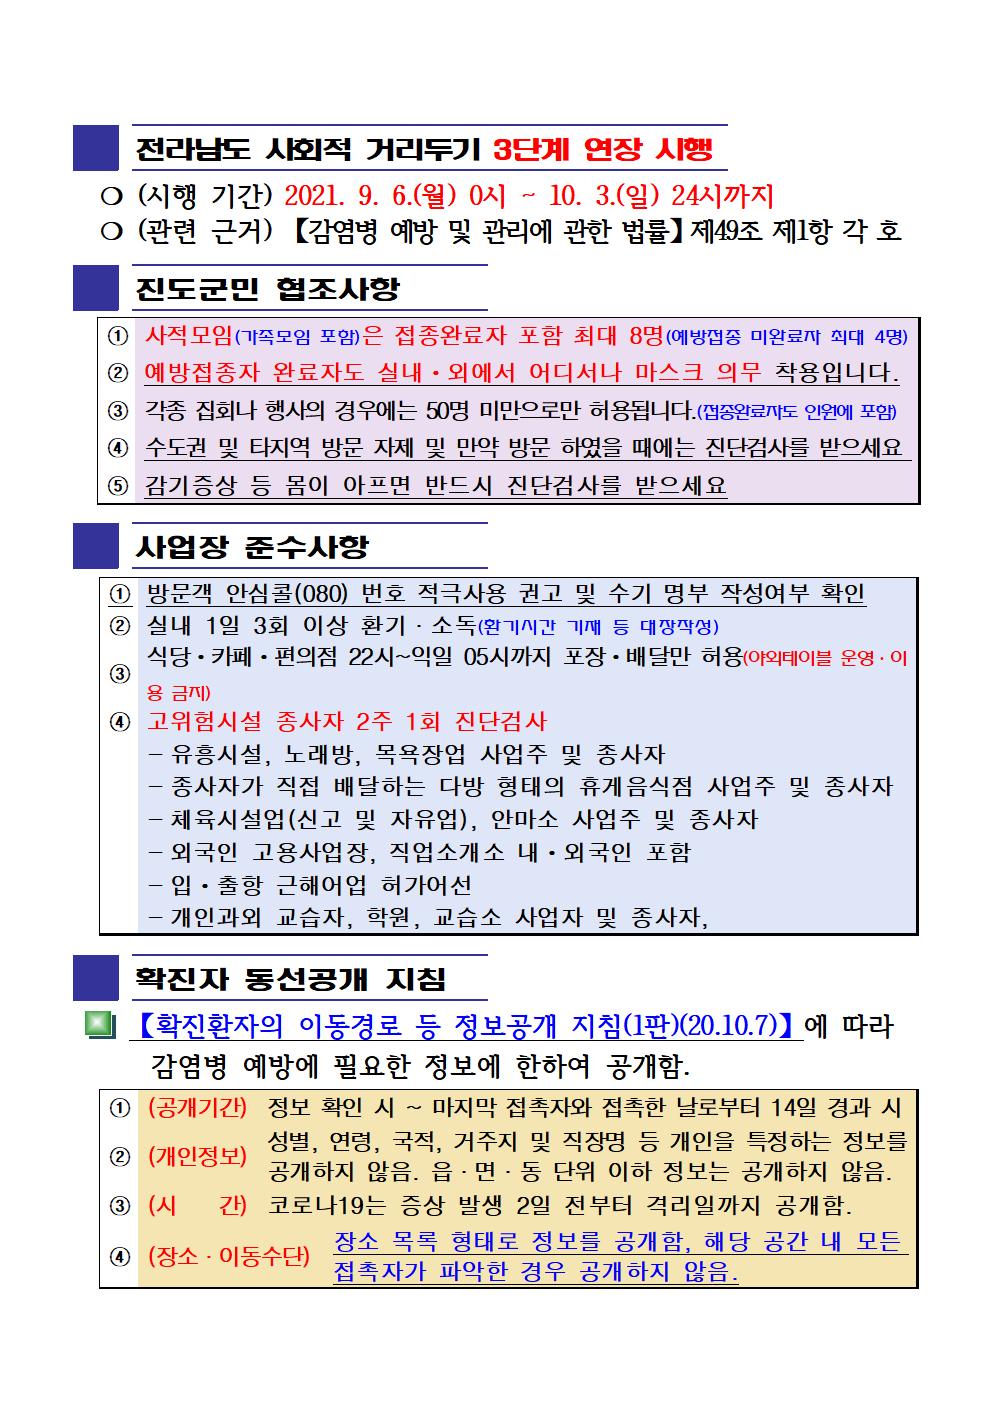 2021년 코로나19 대응 일일상황보고(9월 26일 24시 기준) 첨부#2